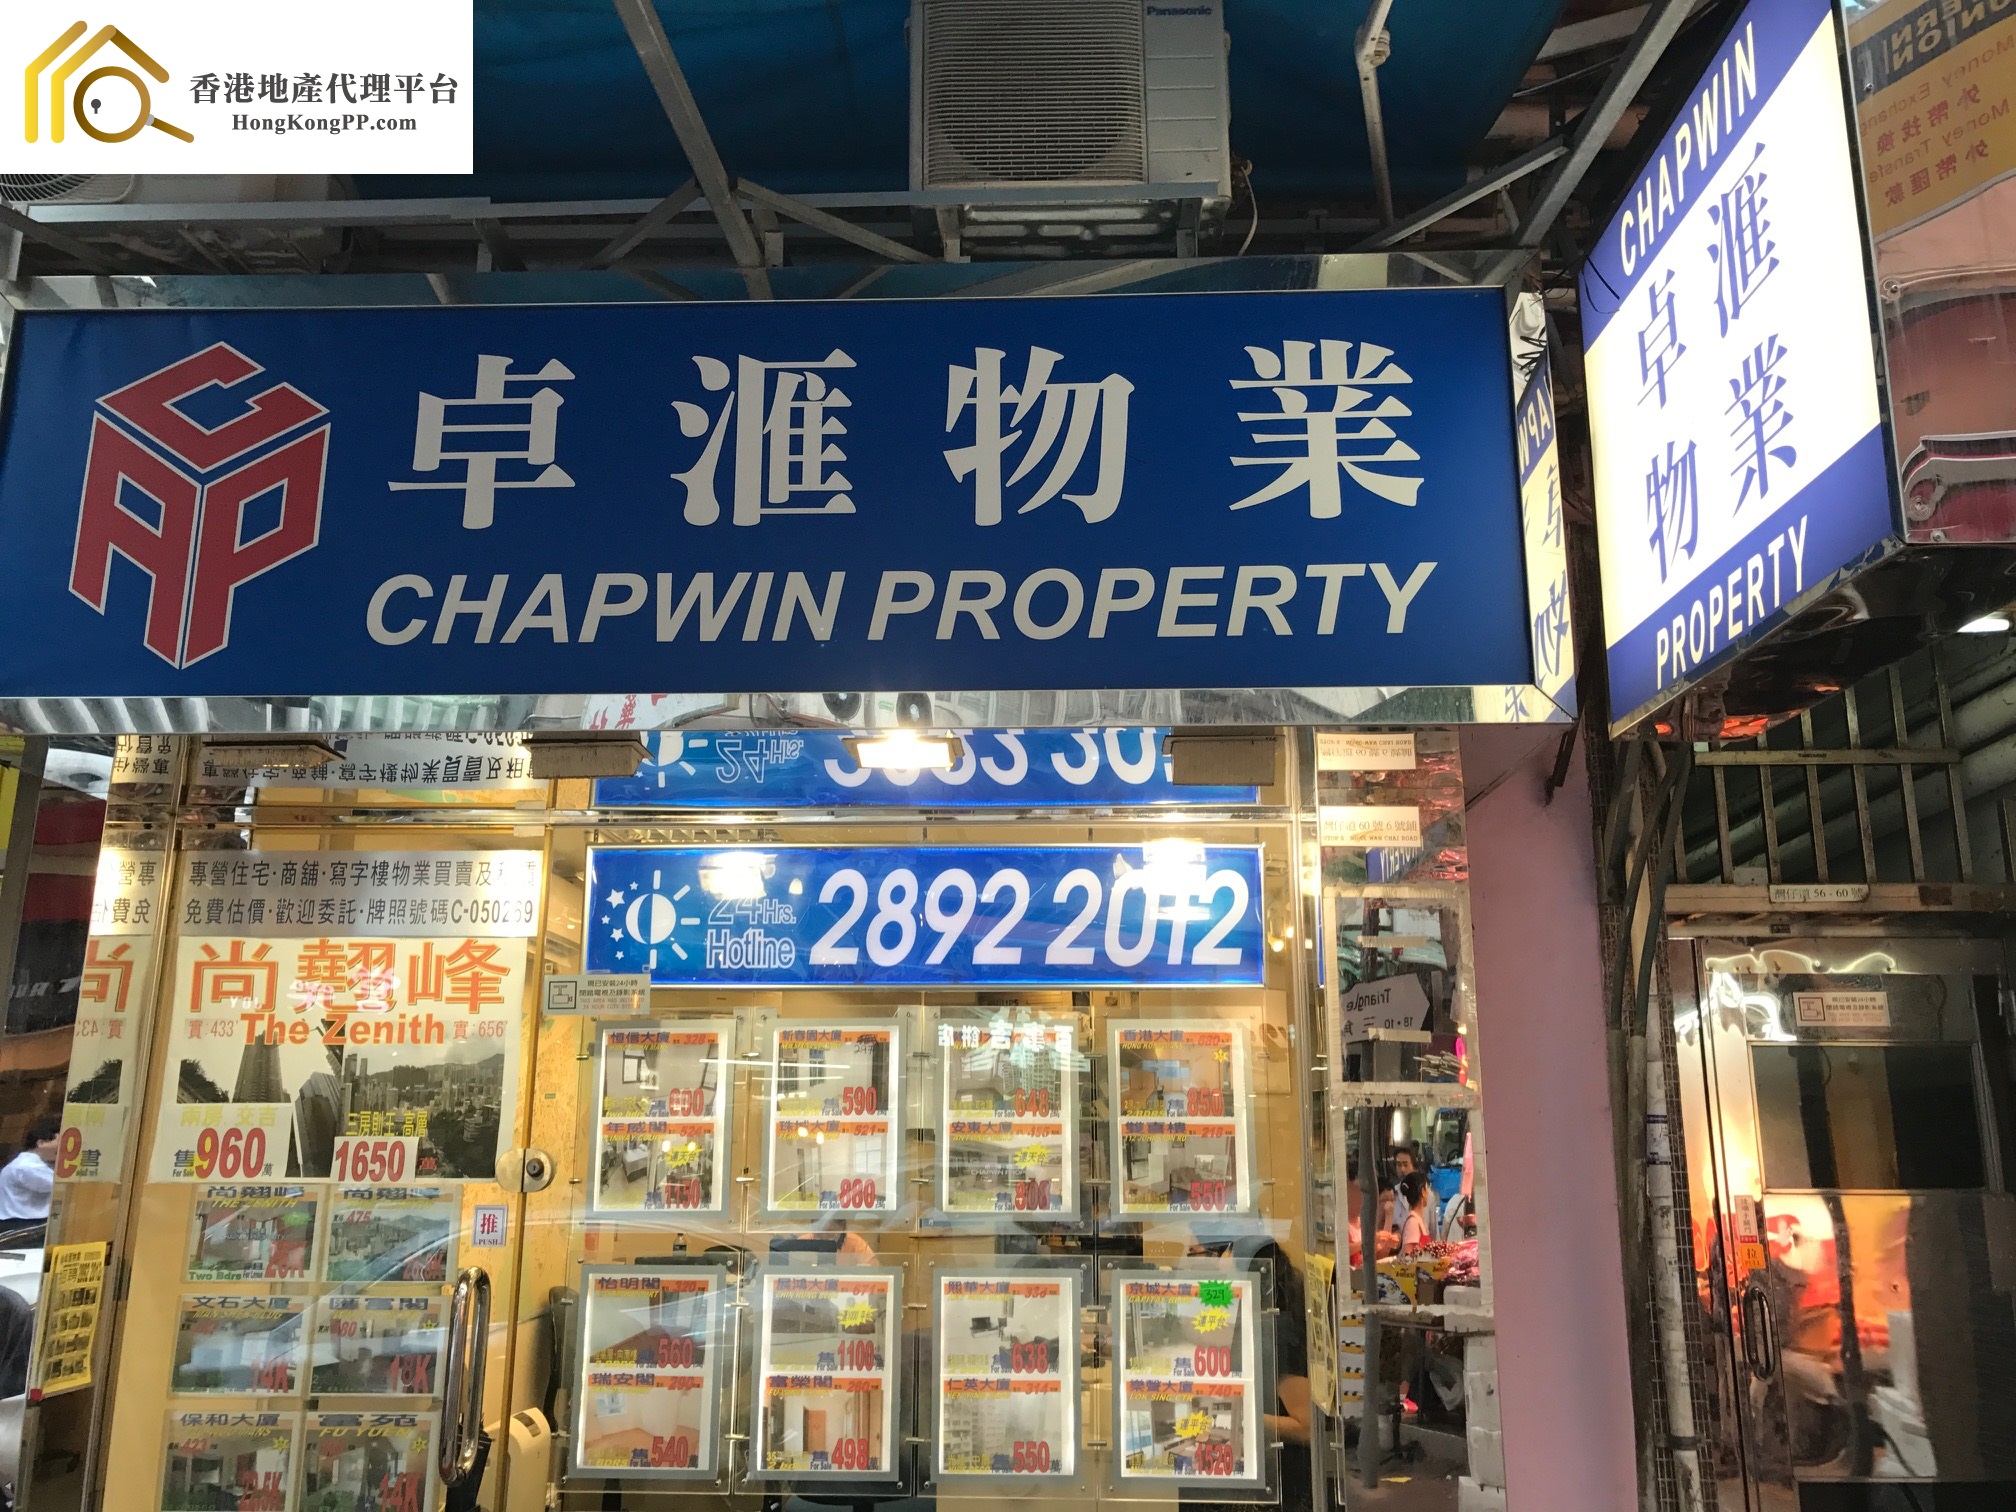 商舖地產代理: 卓匯物業 Chapwin Property Agency